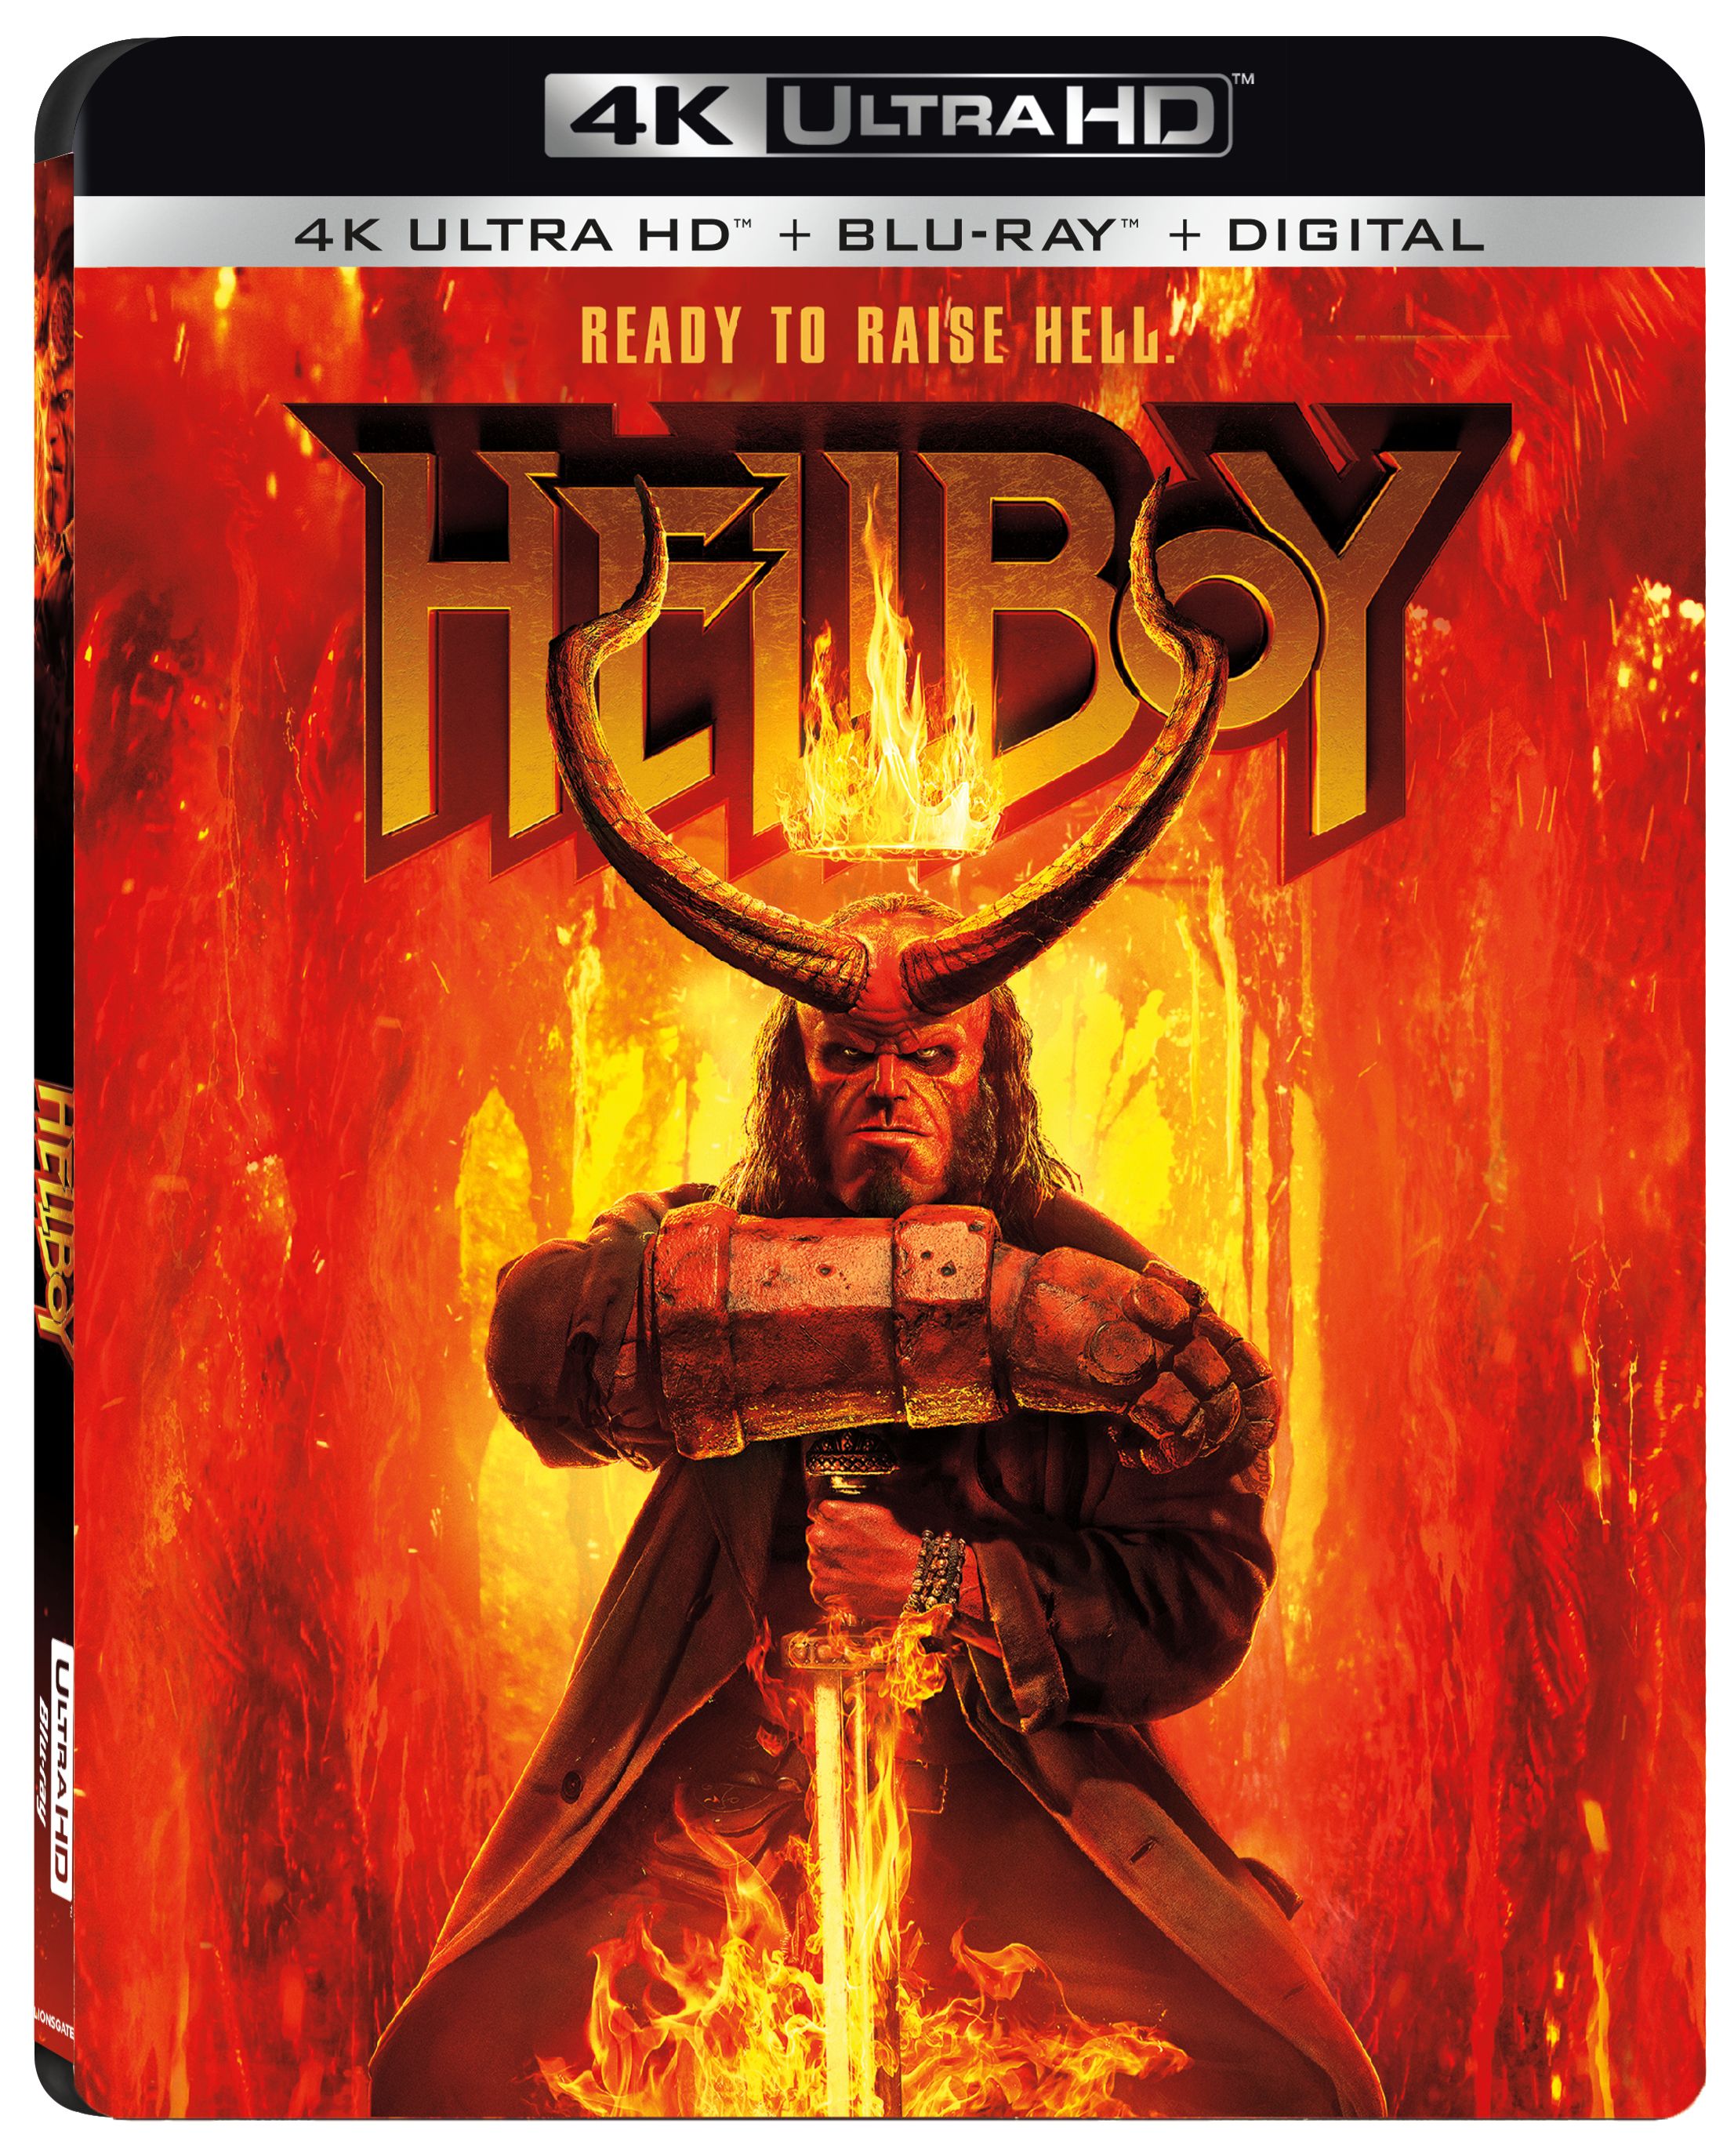 Hellboy 2019 4K UltraHD